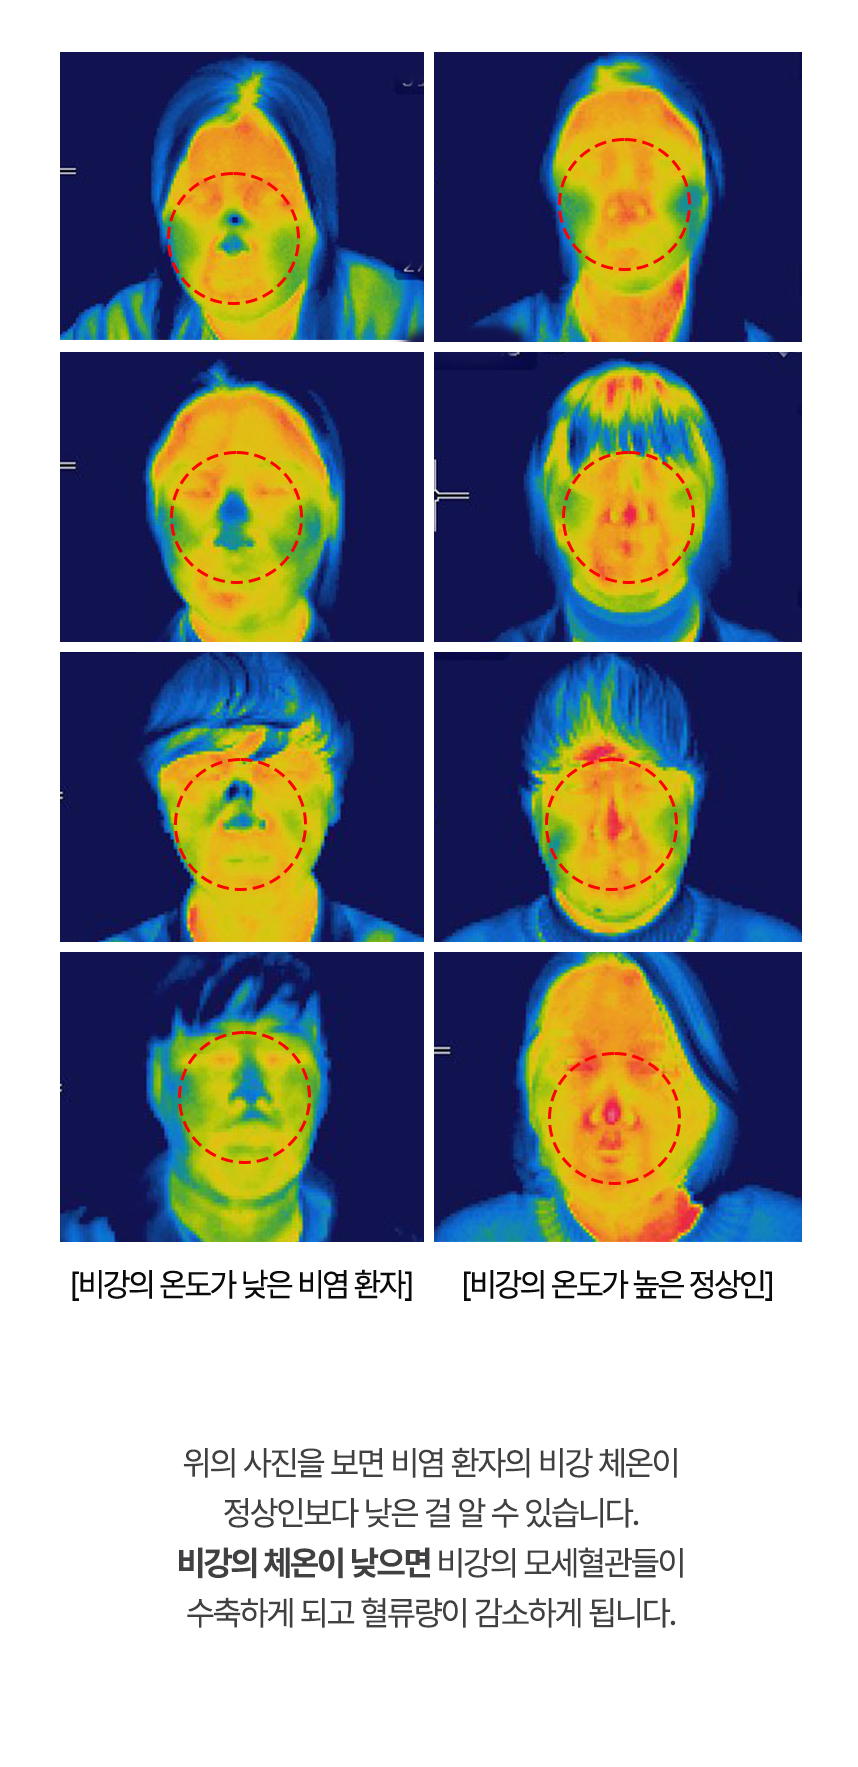 아래는 열화상카메라로 촬영한 사진으로 비염 환자의 비강 체온이 정상인보다 낮은 걸 알 수 있습니다.